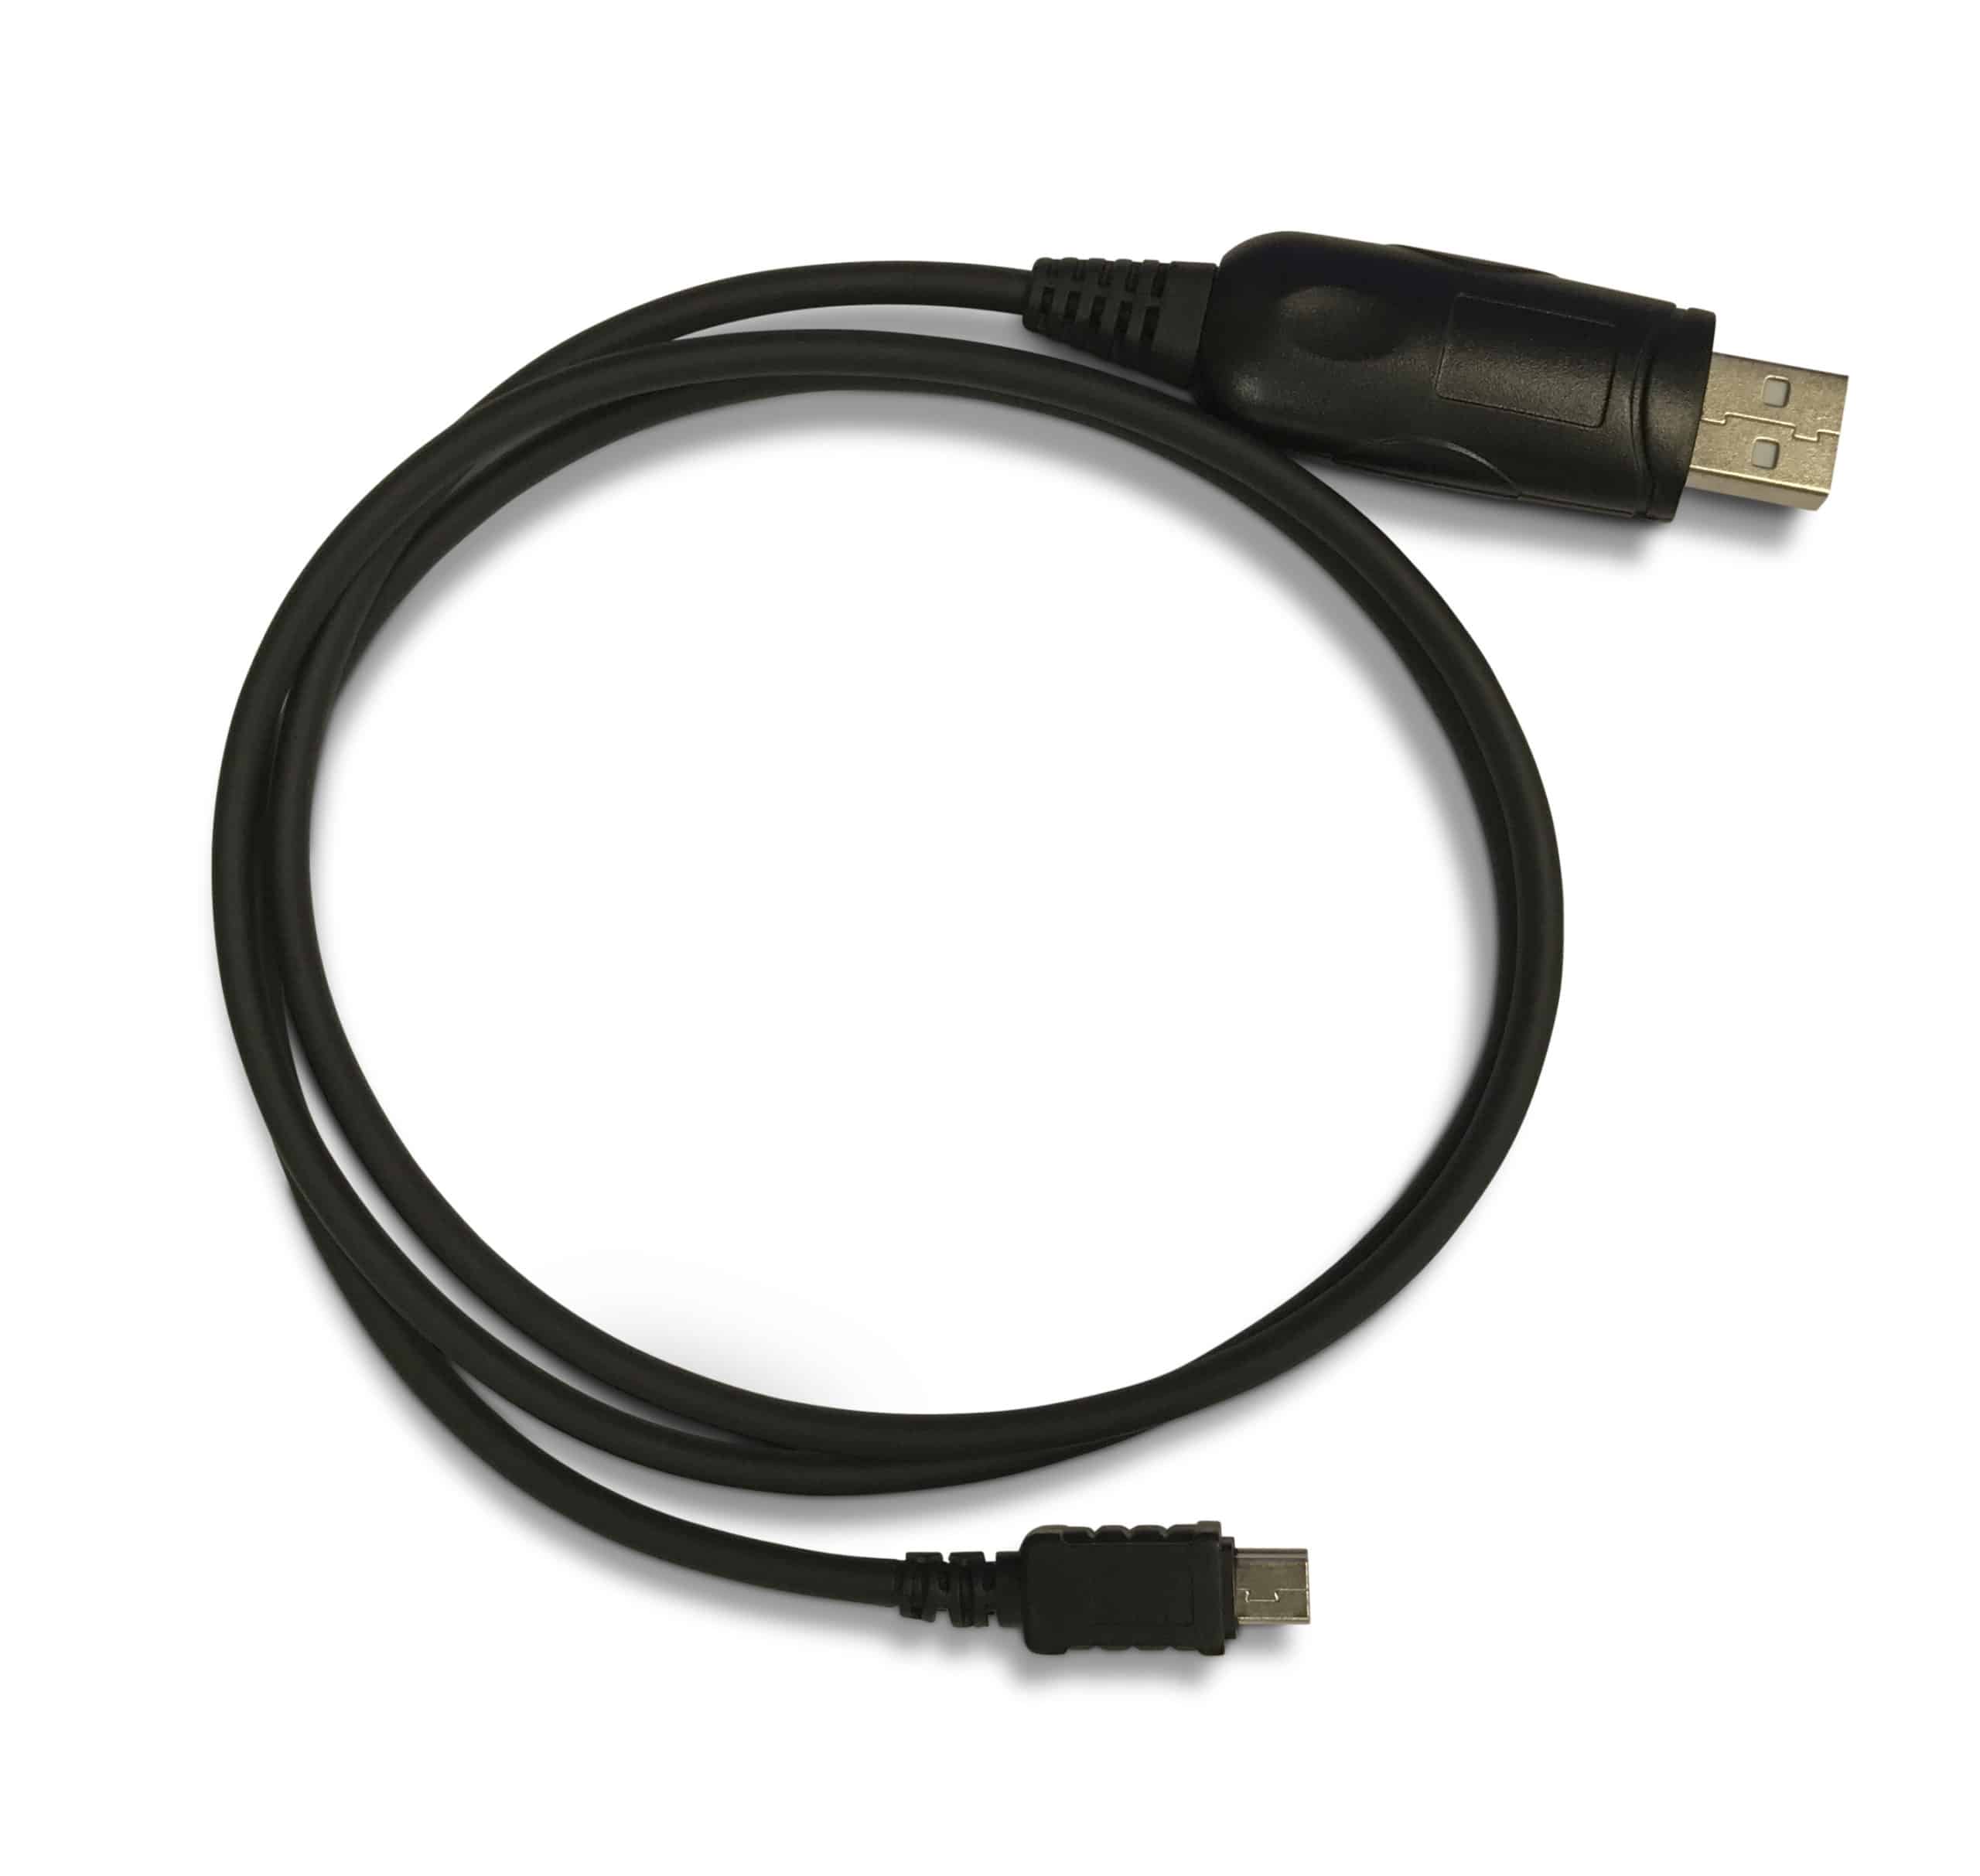 10 Radio USB Cable SR-655, SR-955 SR-447HPC2